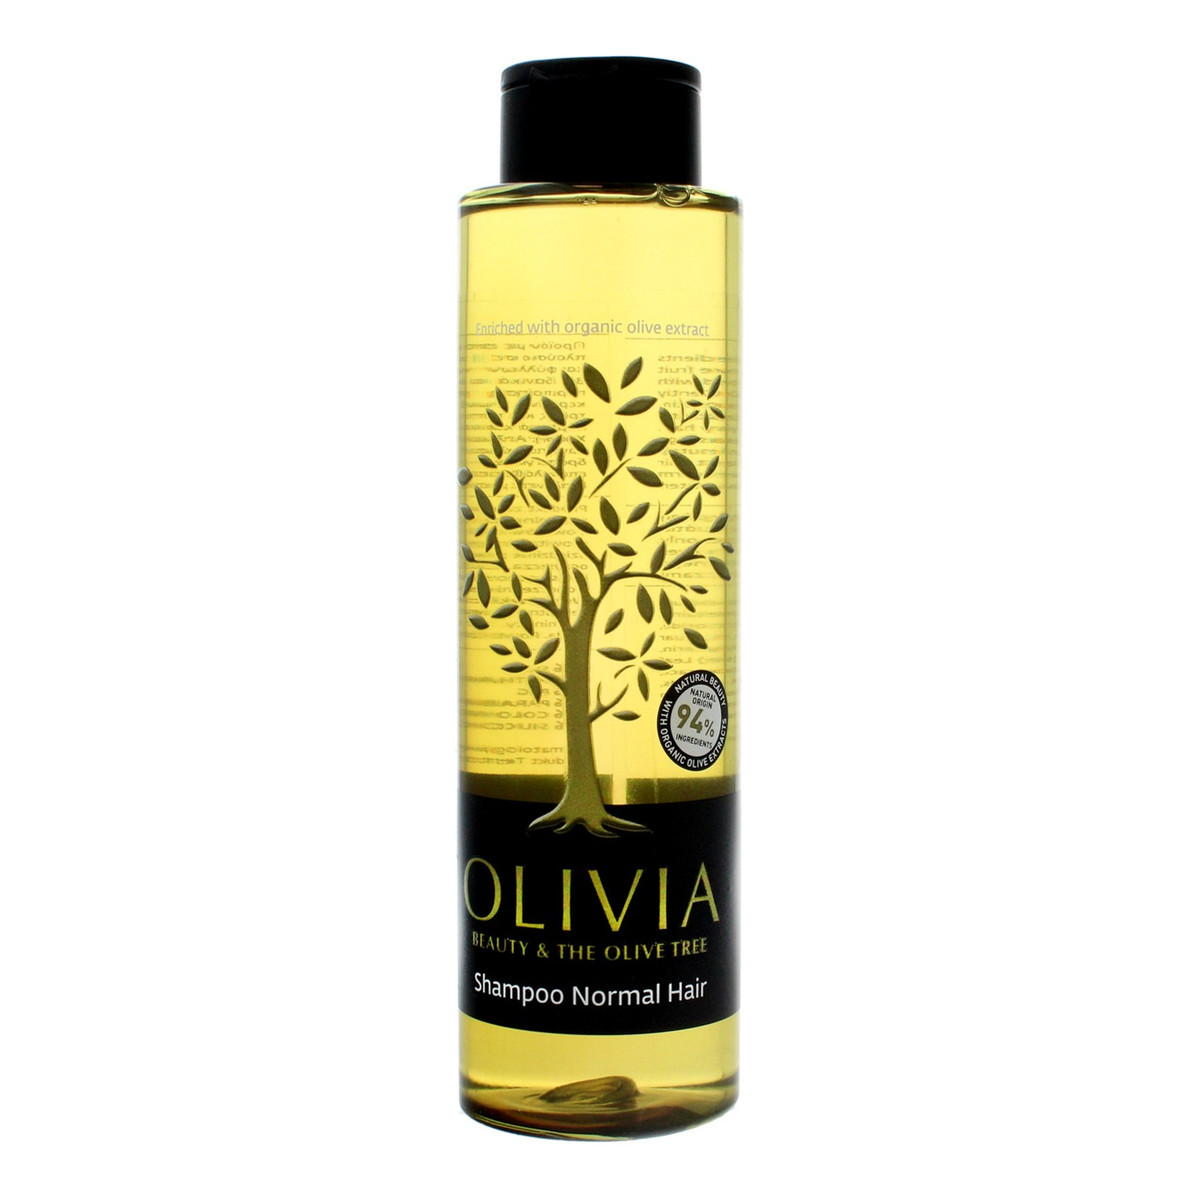 Olivia Beauty & The Olive Tree Szampon do włosów normalnych 300ml